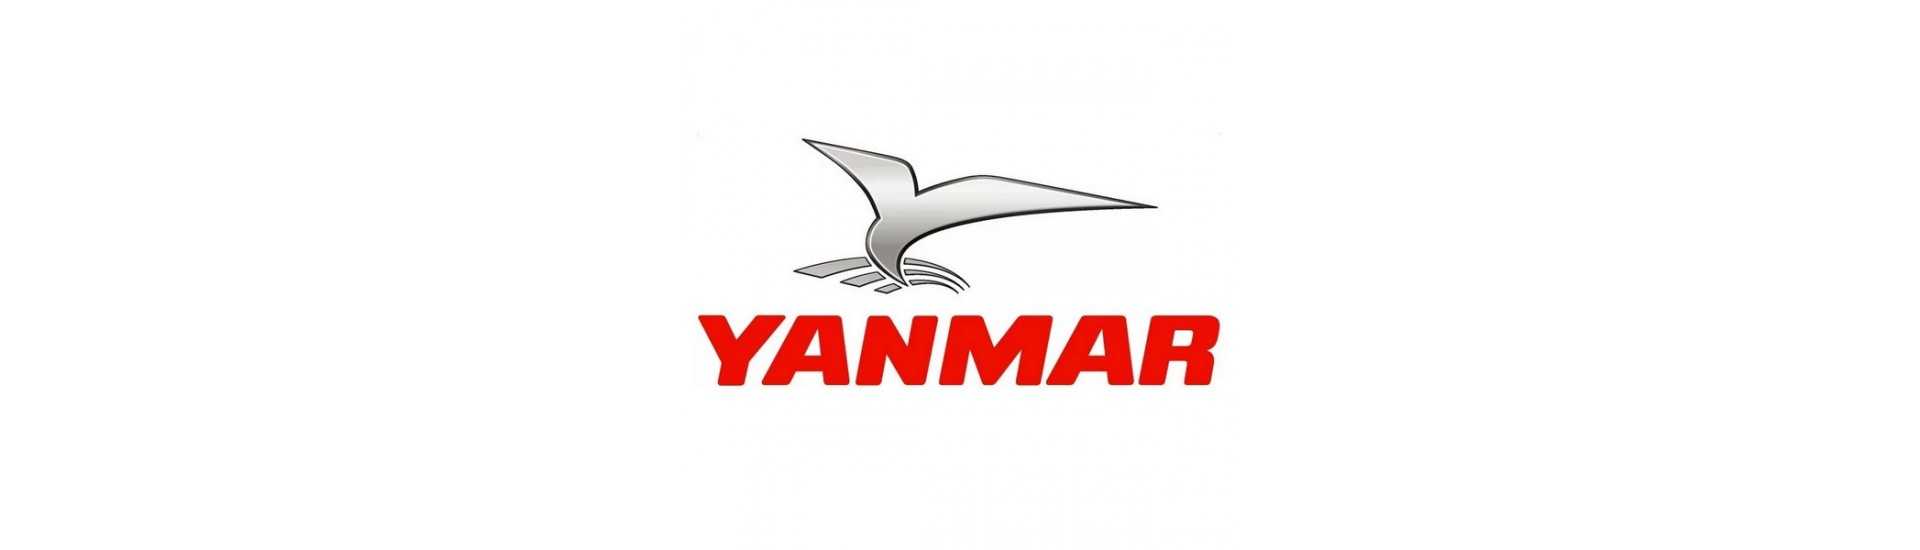 Filtres à air Yanmar au meilleur prix pour voiture sans permis